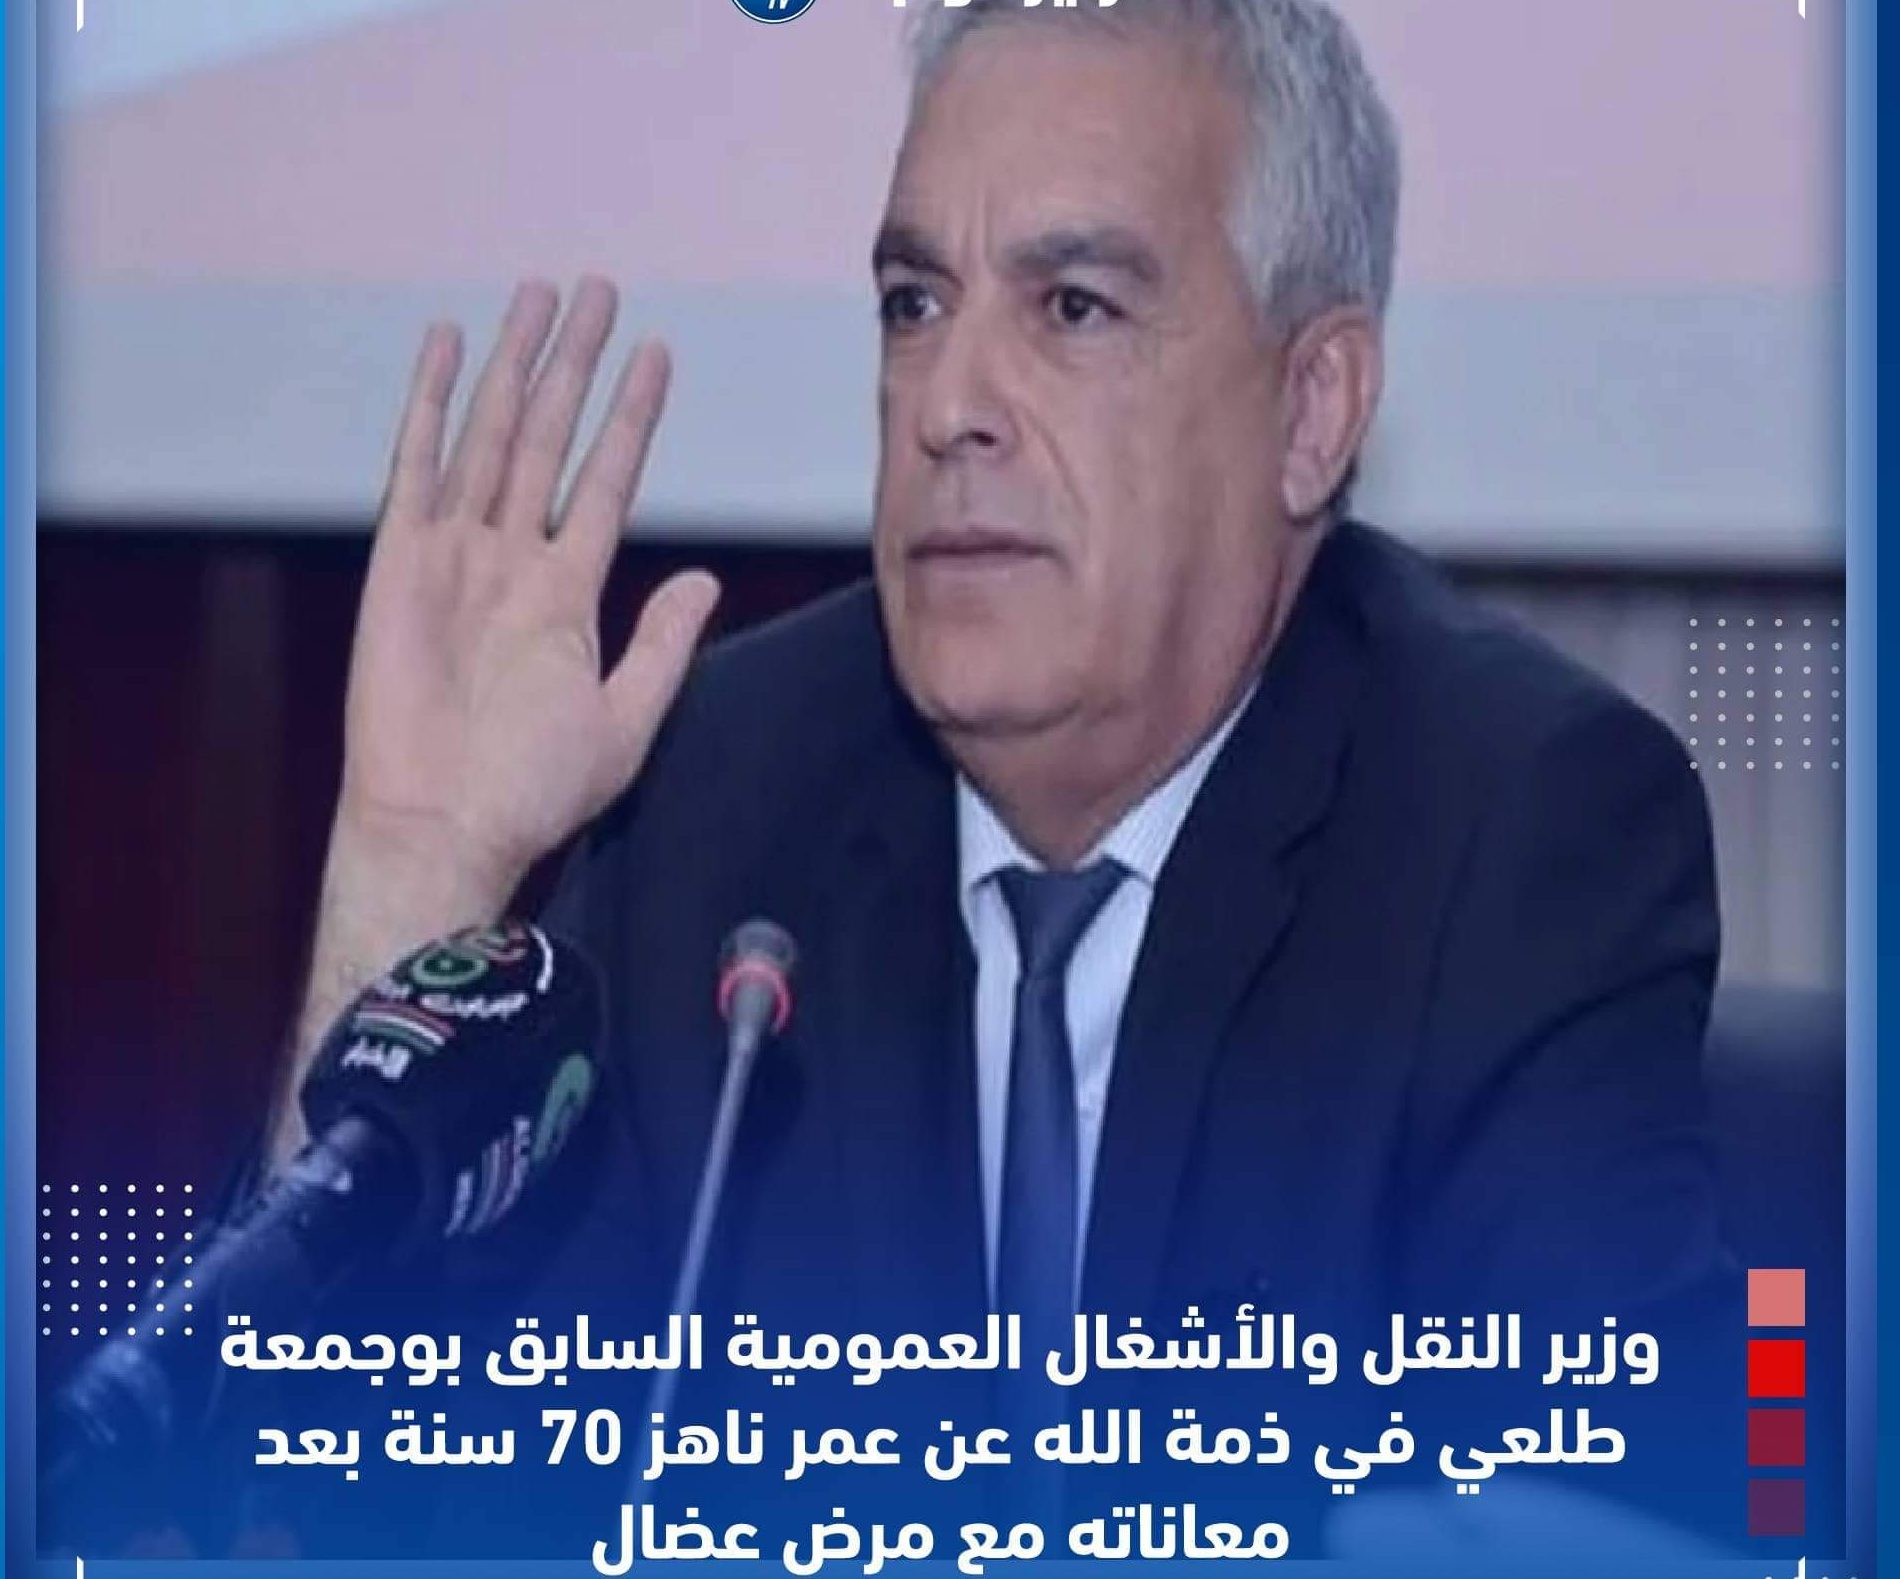 سبب وفاة بوجمعة طلعي الوزير الجزائري الأسبق